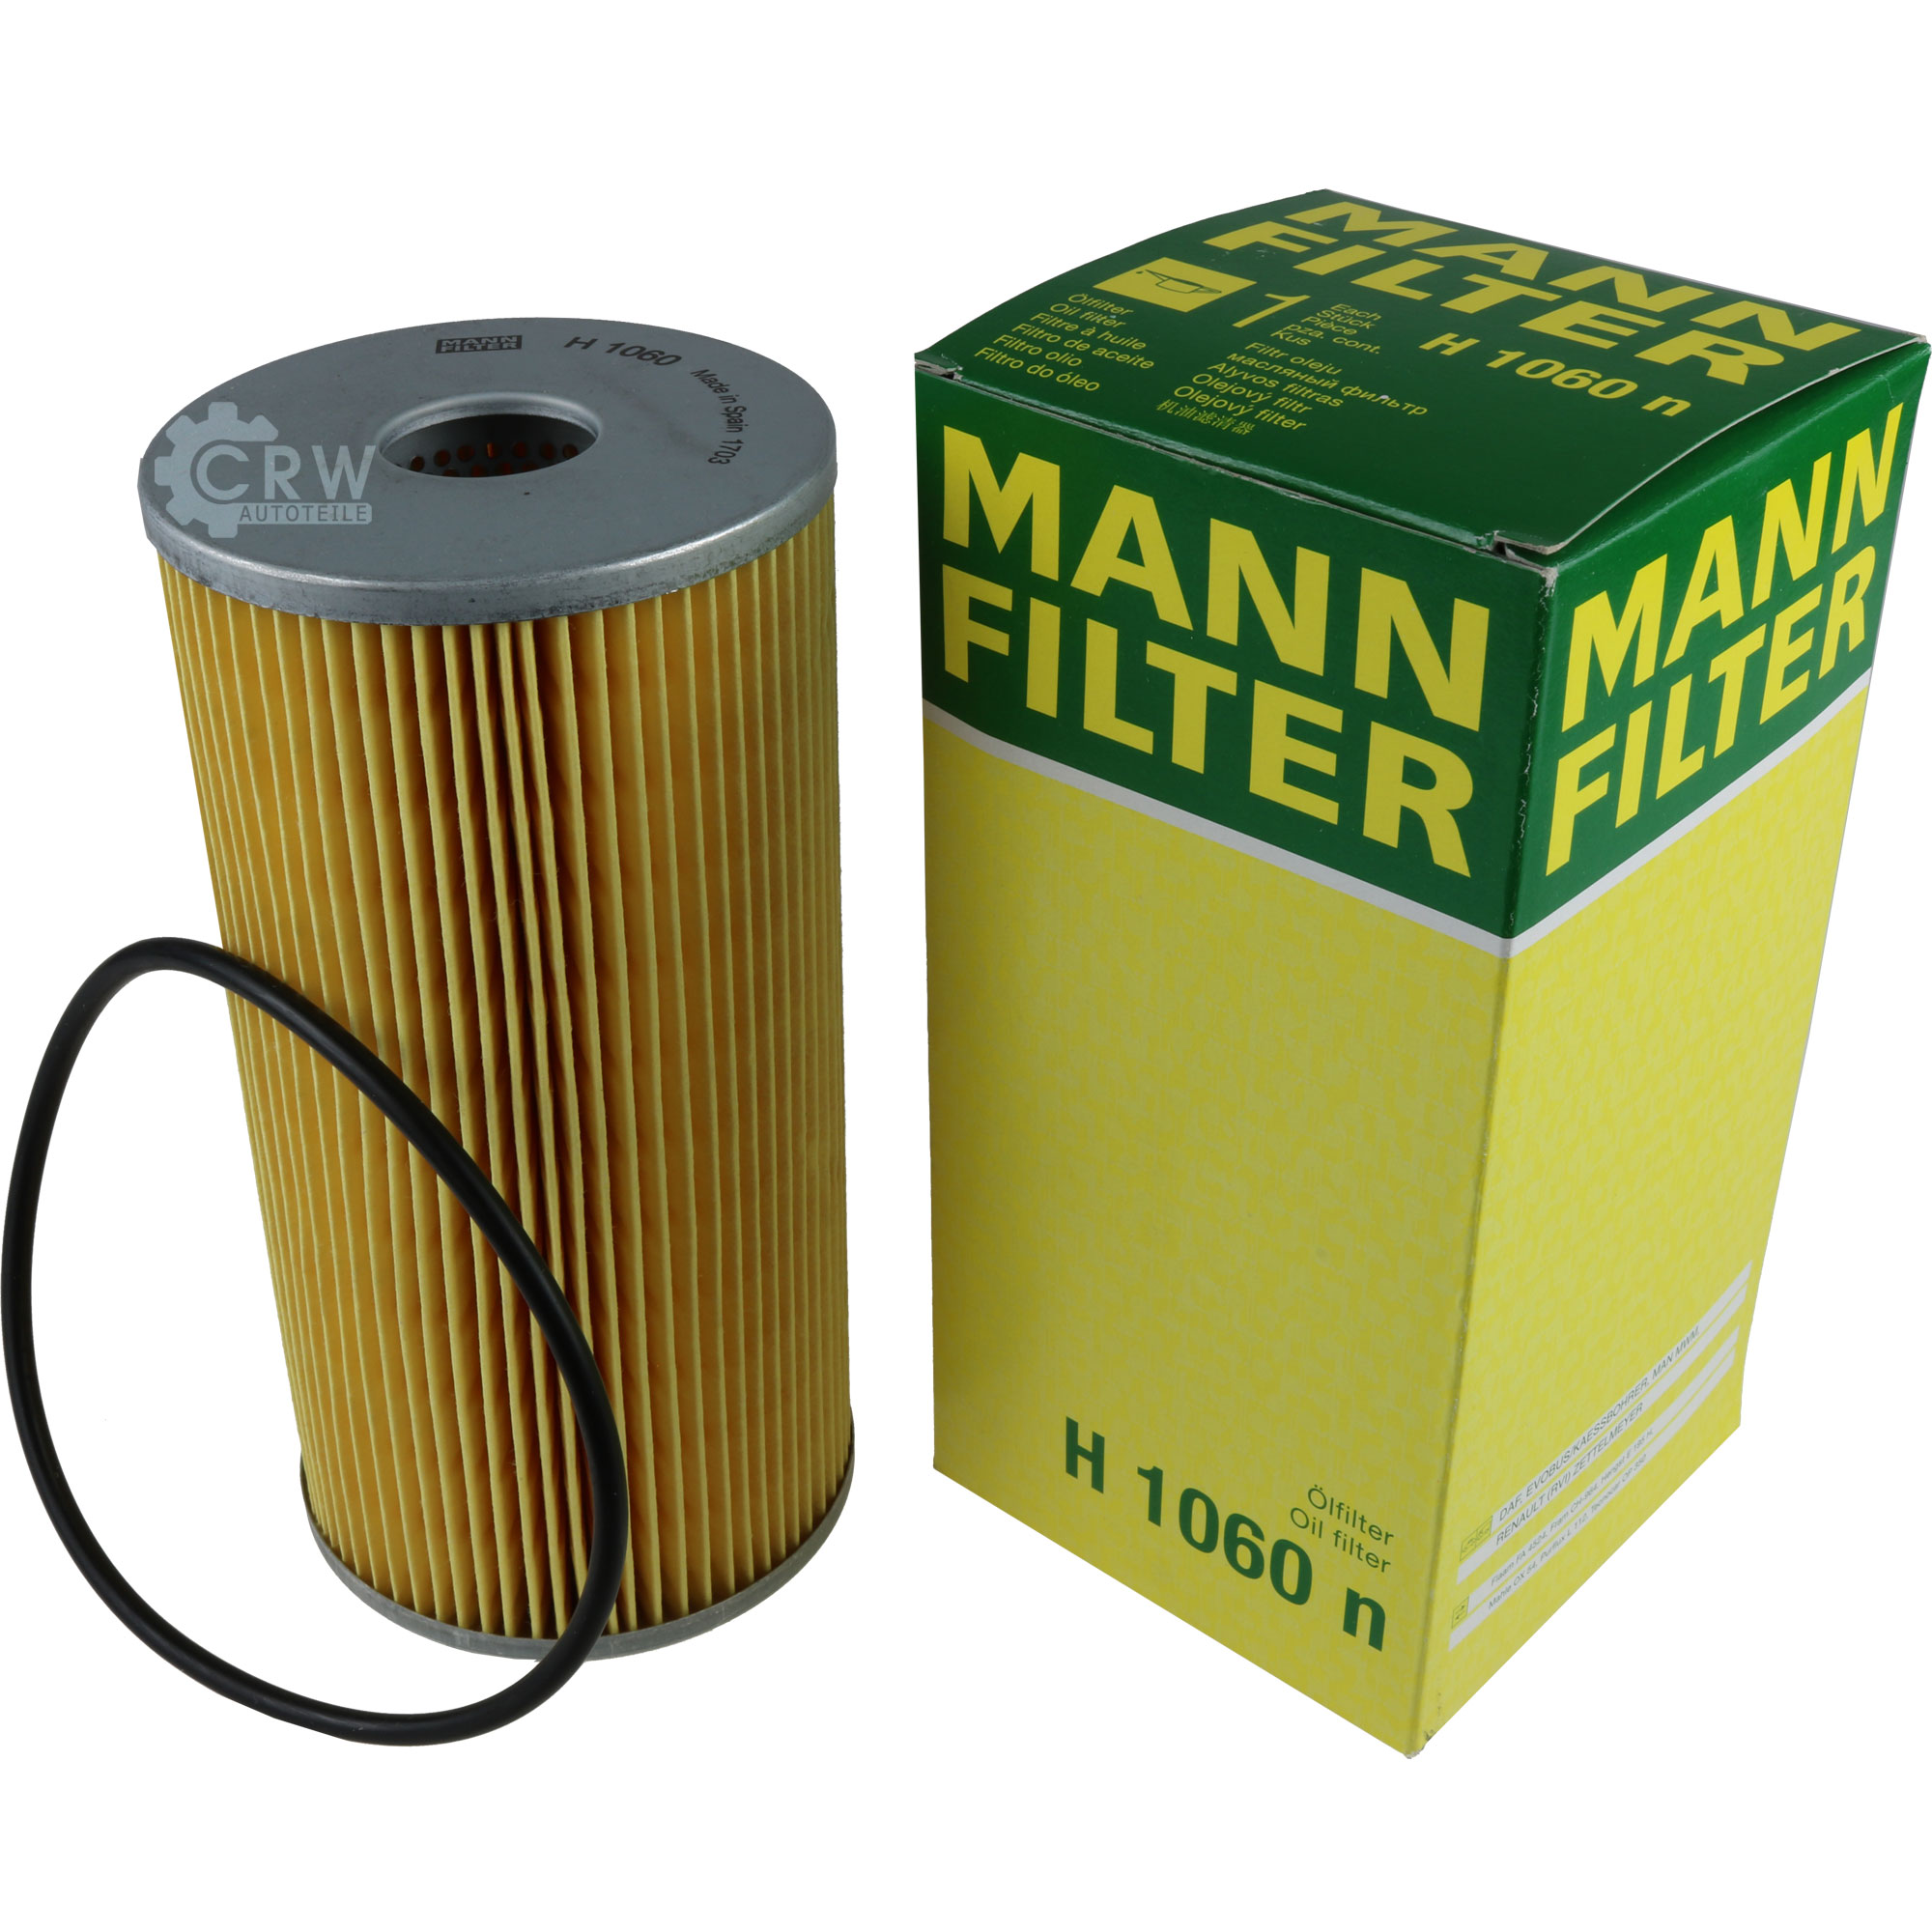 MANN-FILTER Ölfilter Hydraulikfilter für Automatikgetriebe H 1060 n